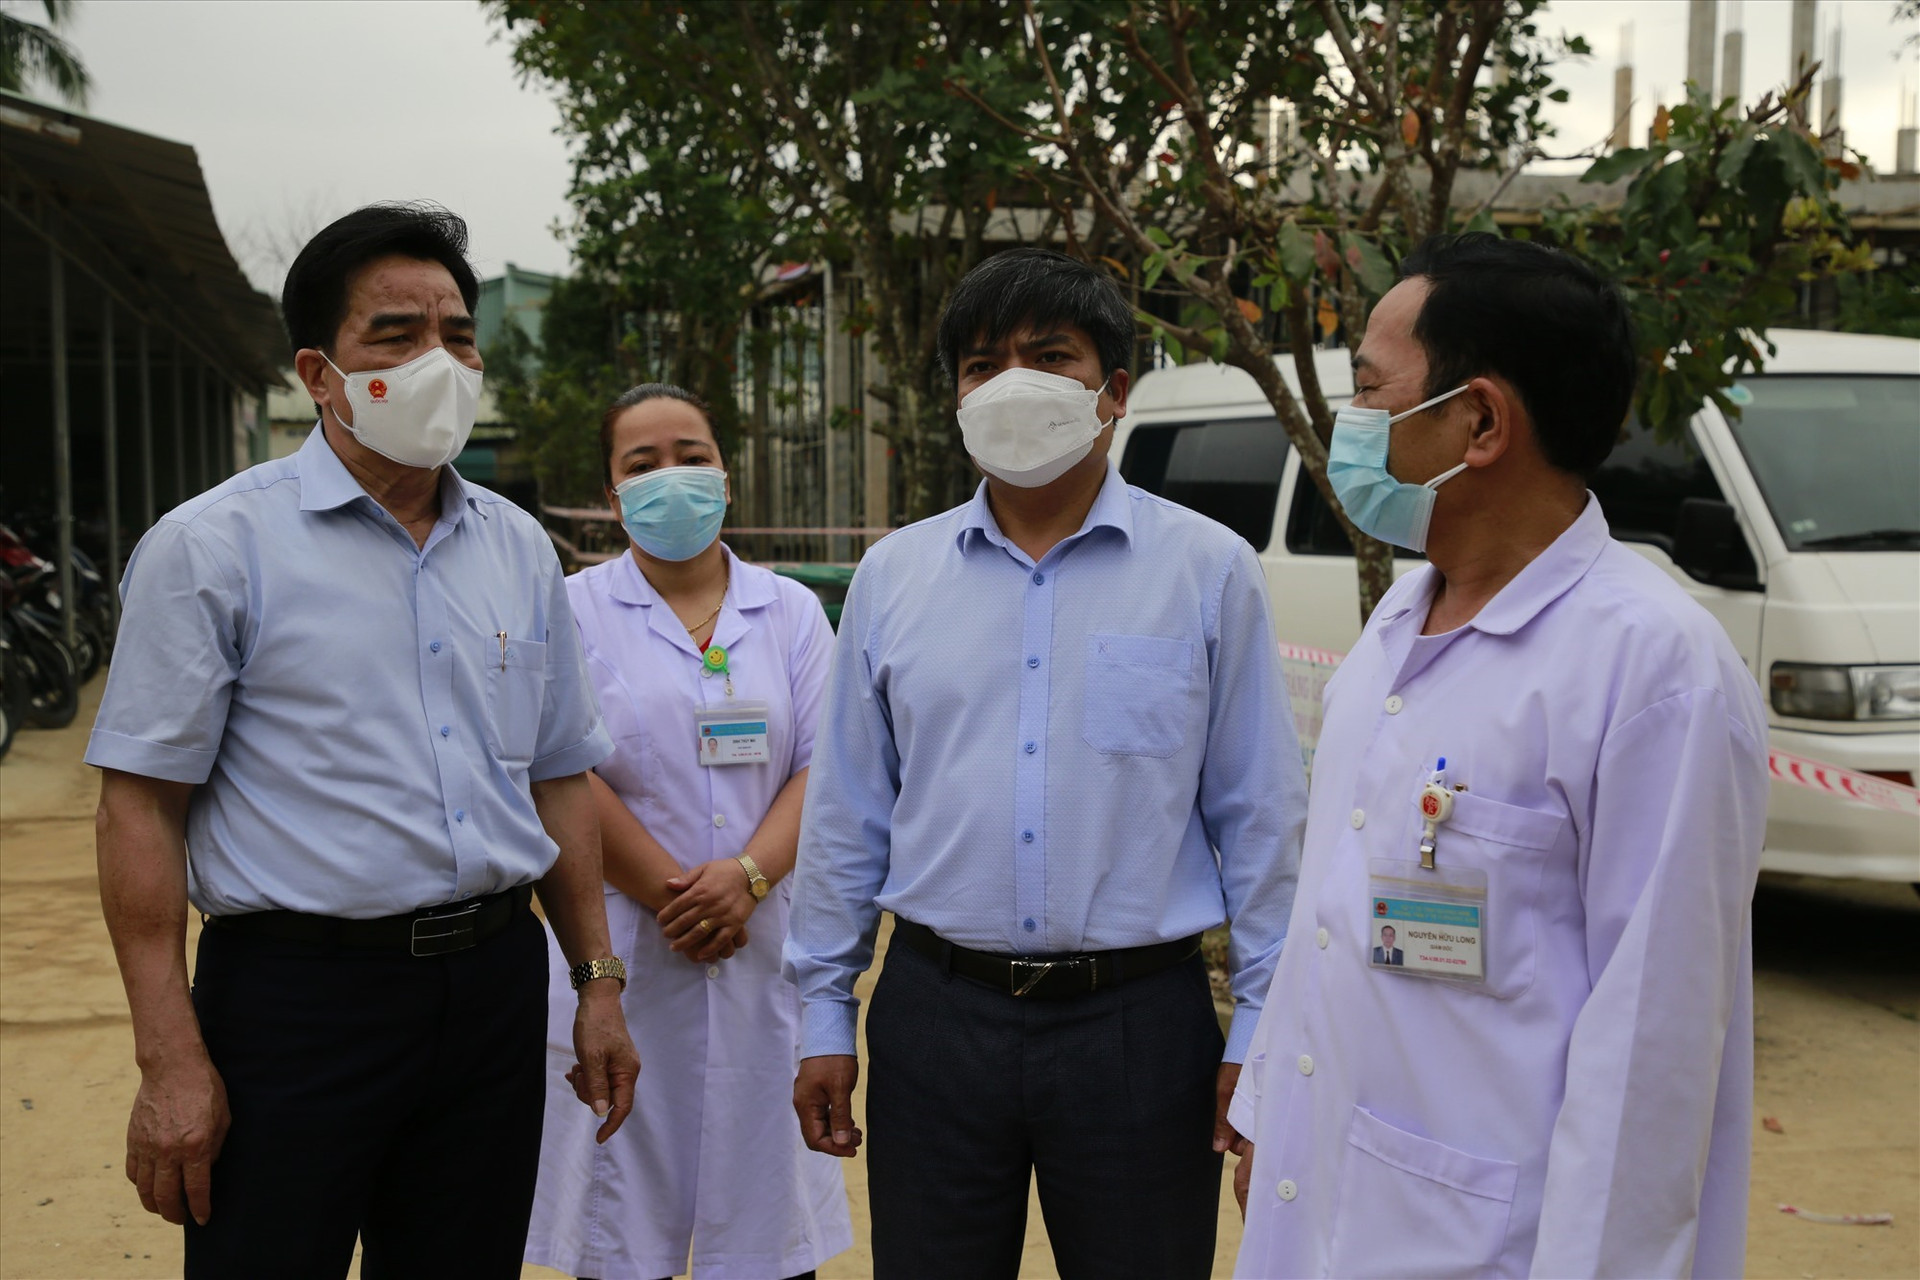 Đồng chí Lê Văn Dũng thăm hỏi, động viên đội ngũ lãnh đạo, y bác sĩ Trung tâm Y tế Phước Sơn. Ảnh: T.C